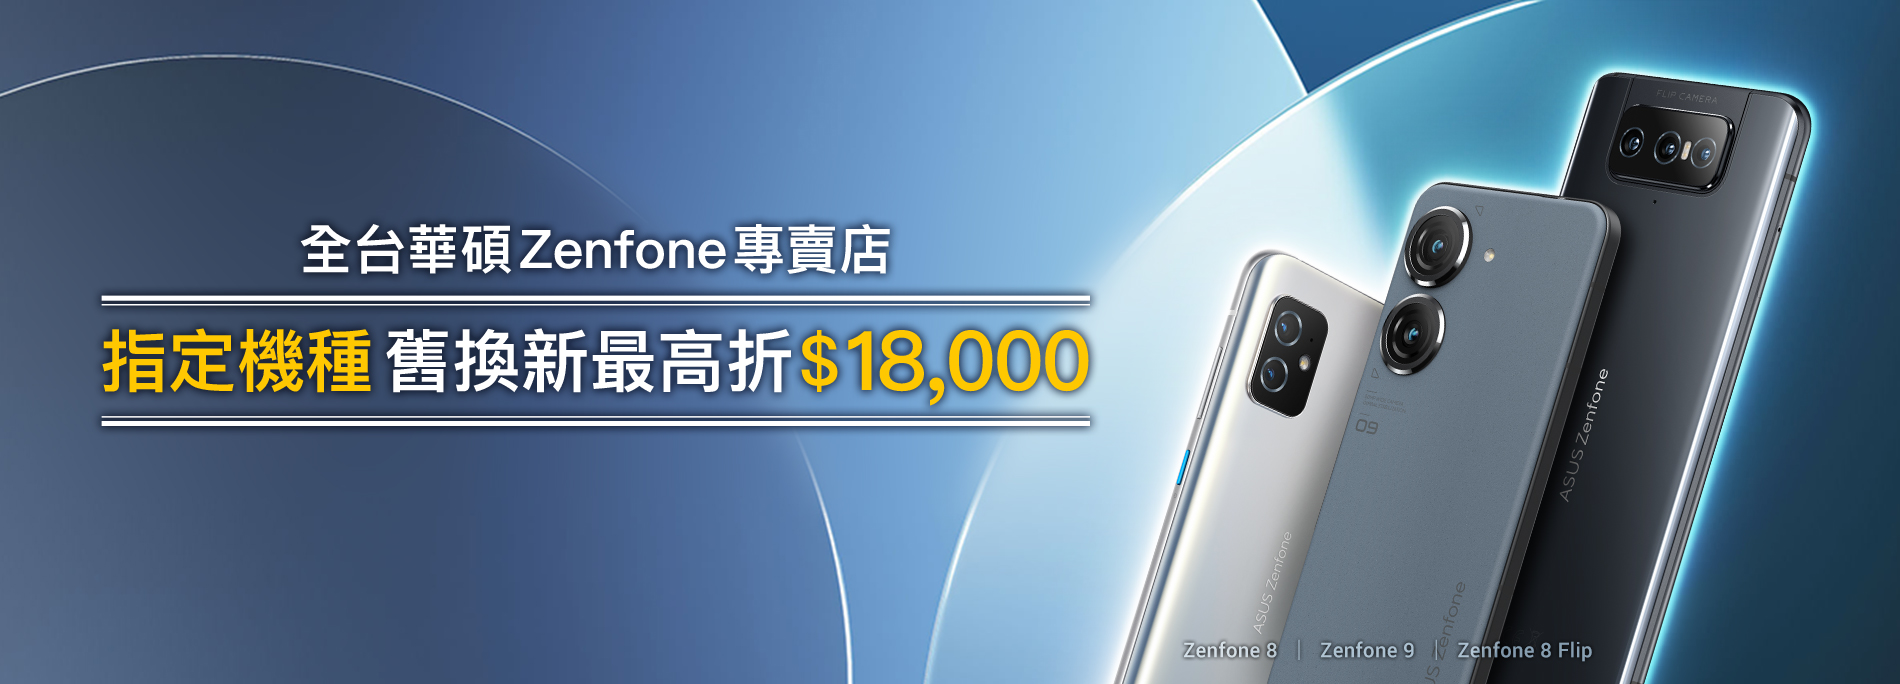 【手機舊換新】全台 ASUS Zenfone 專賣店，回收舊機最高折 $18,000！